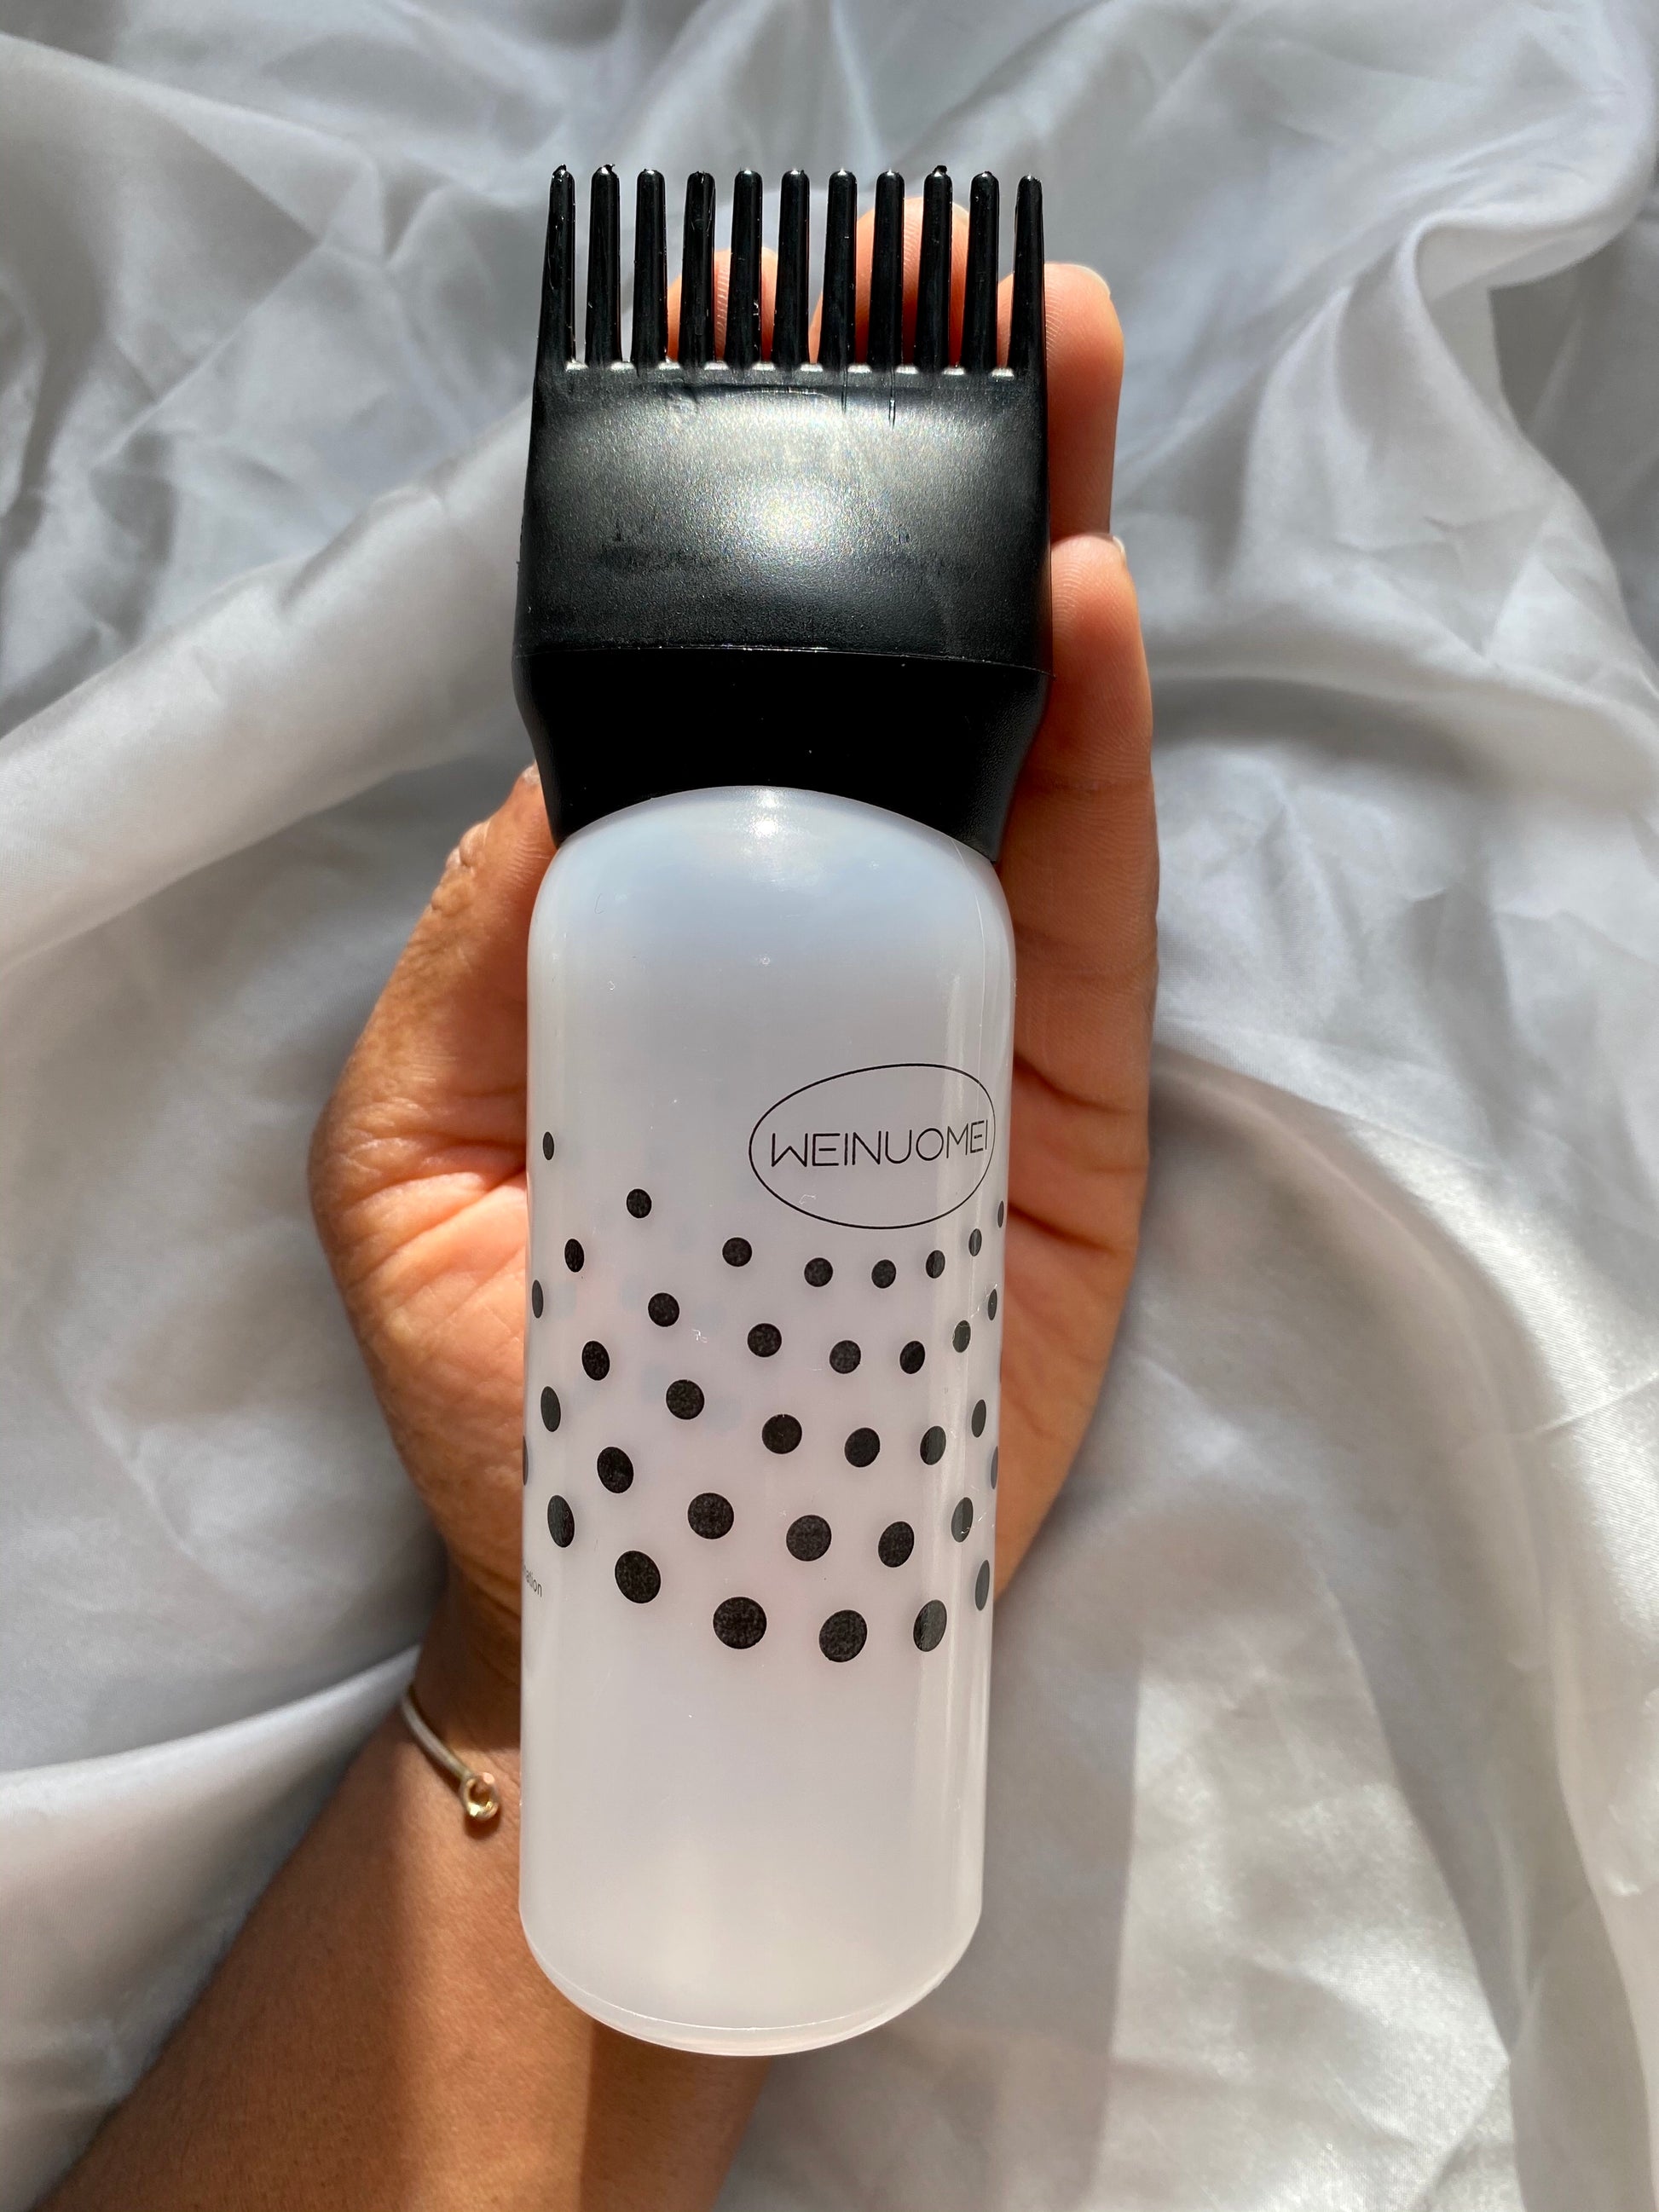 Hair Oil Applicator Bottle